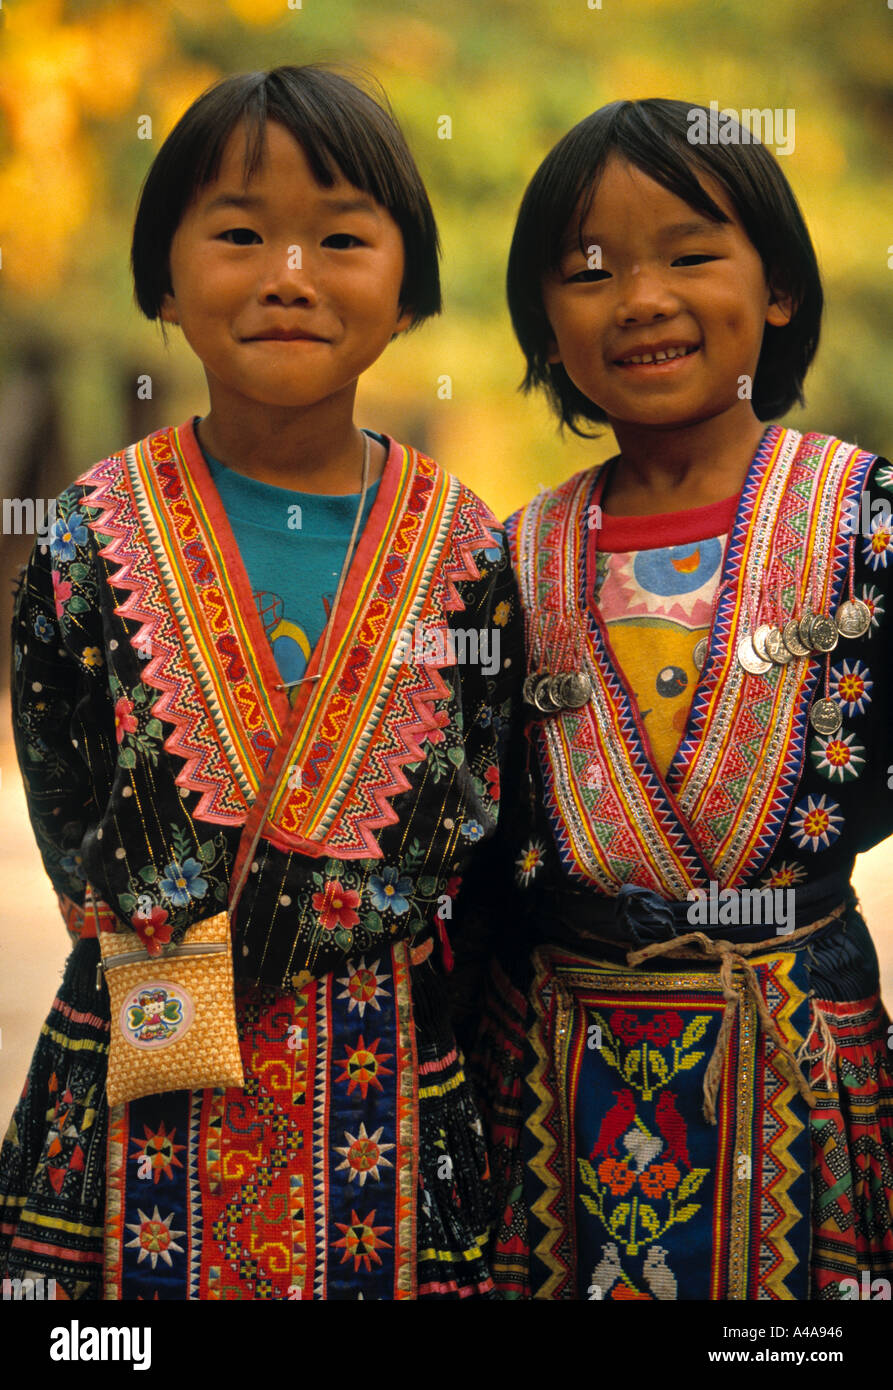 La tribu Hmong, région de Chiang Mai, Thaïlande Banque D'Images